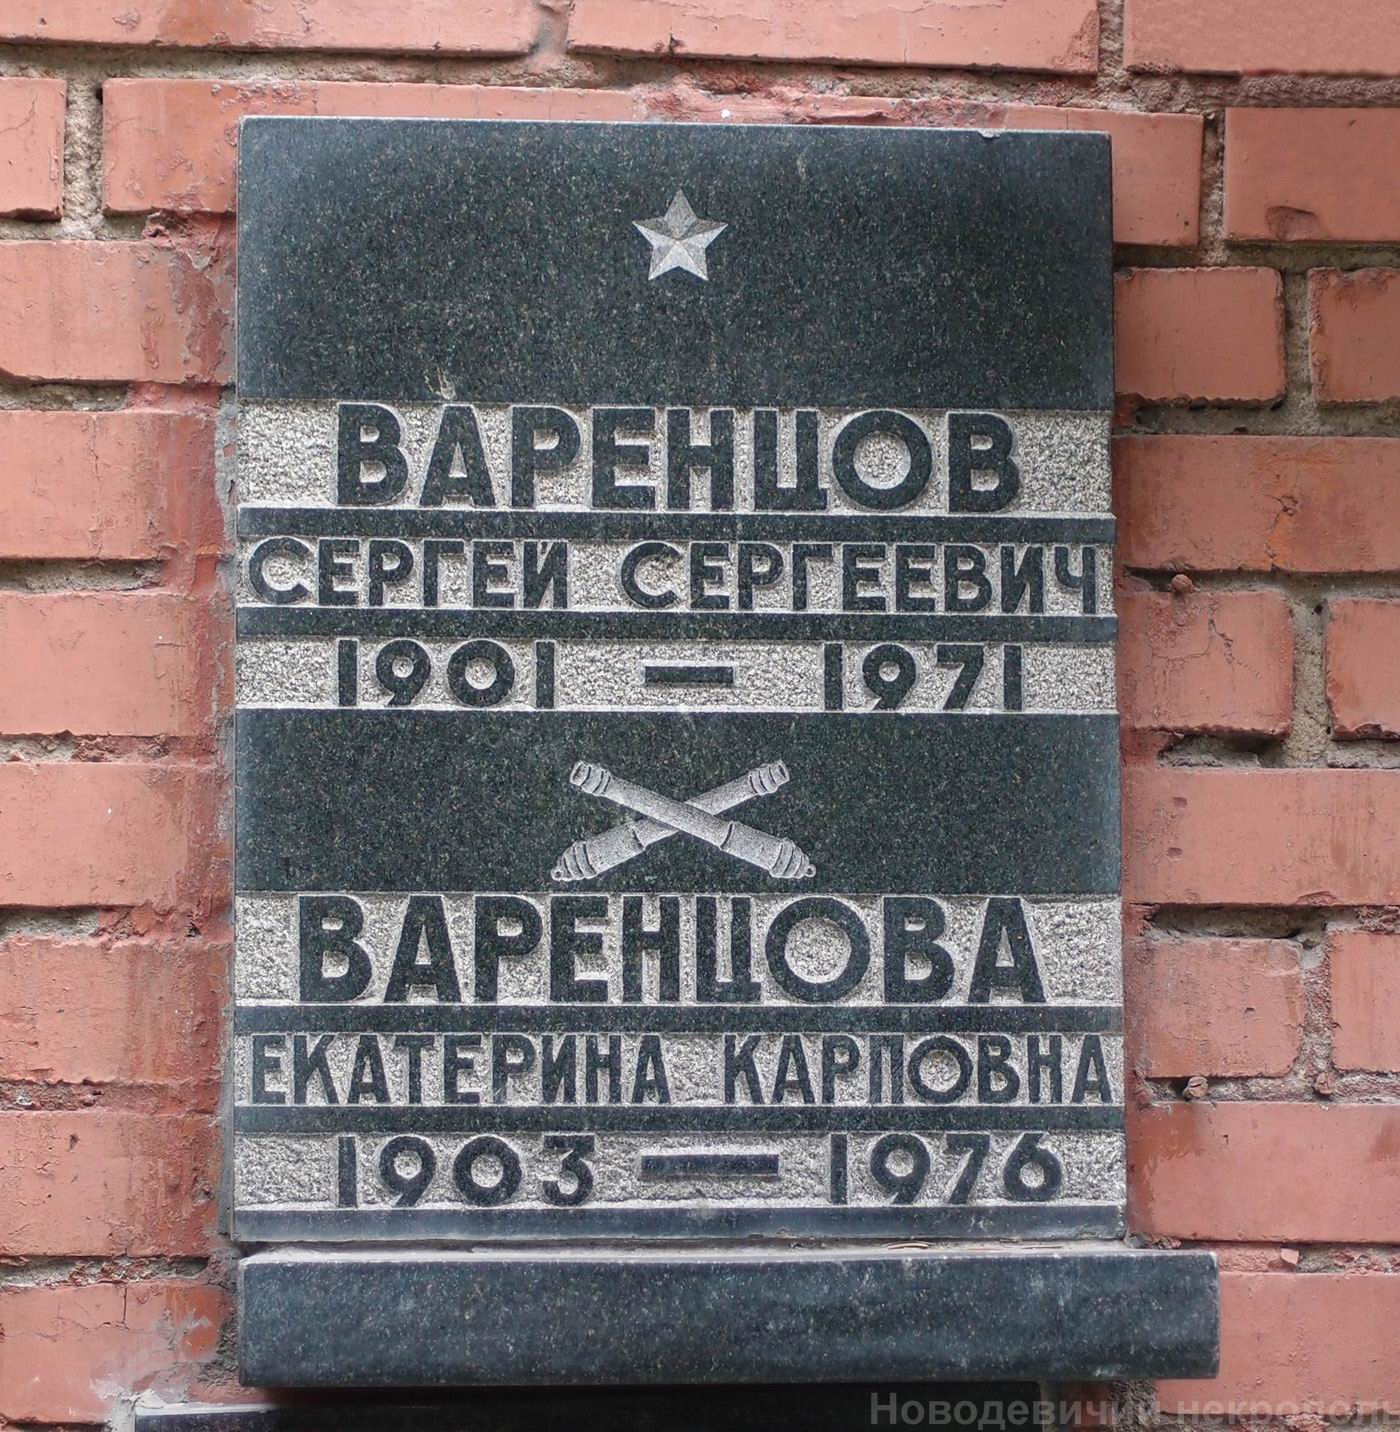 Плита на нише Варенцова С.С. (1901-1971), на Новодевичьем кладбище (колумбарий [129]-4-2).